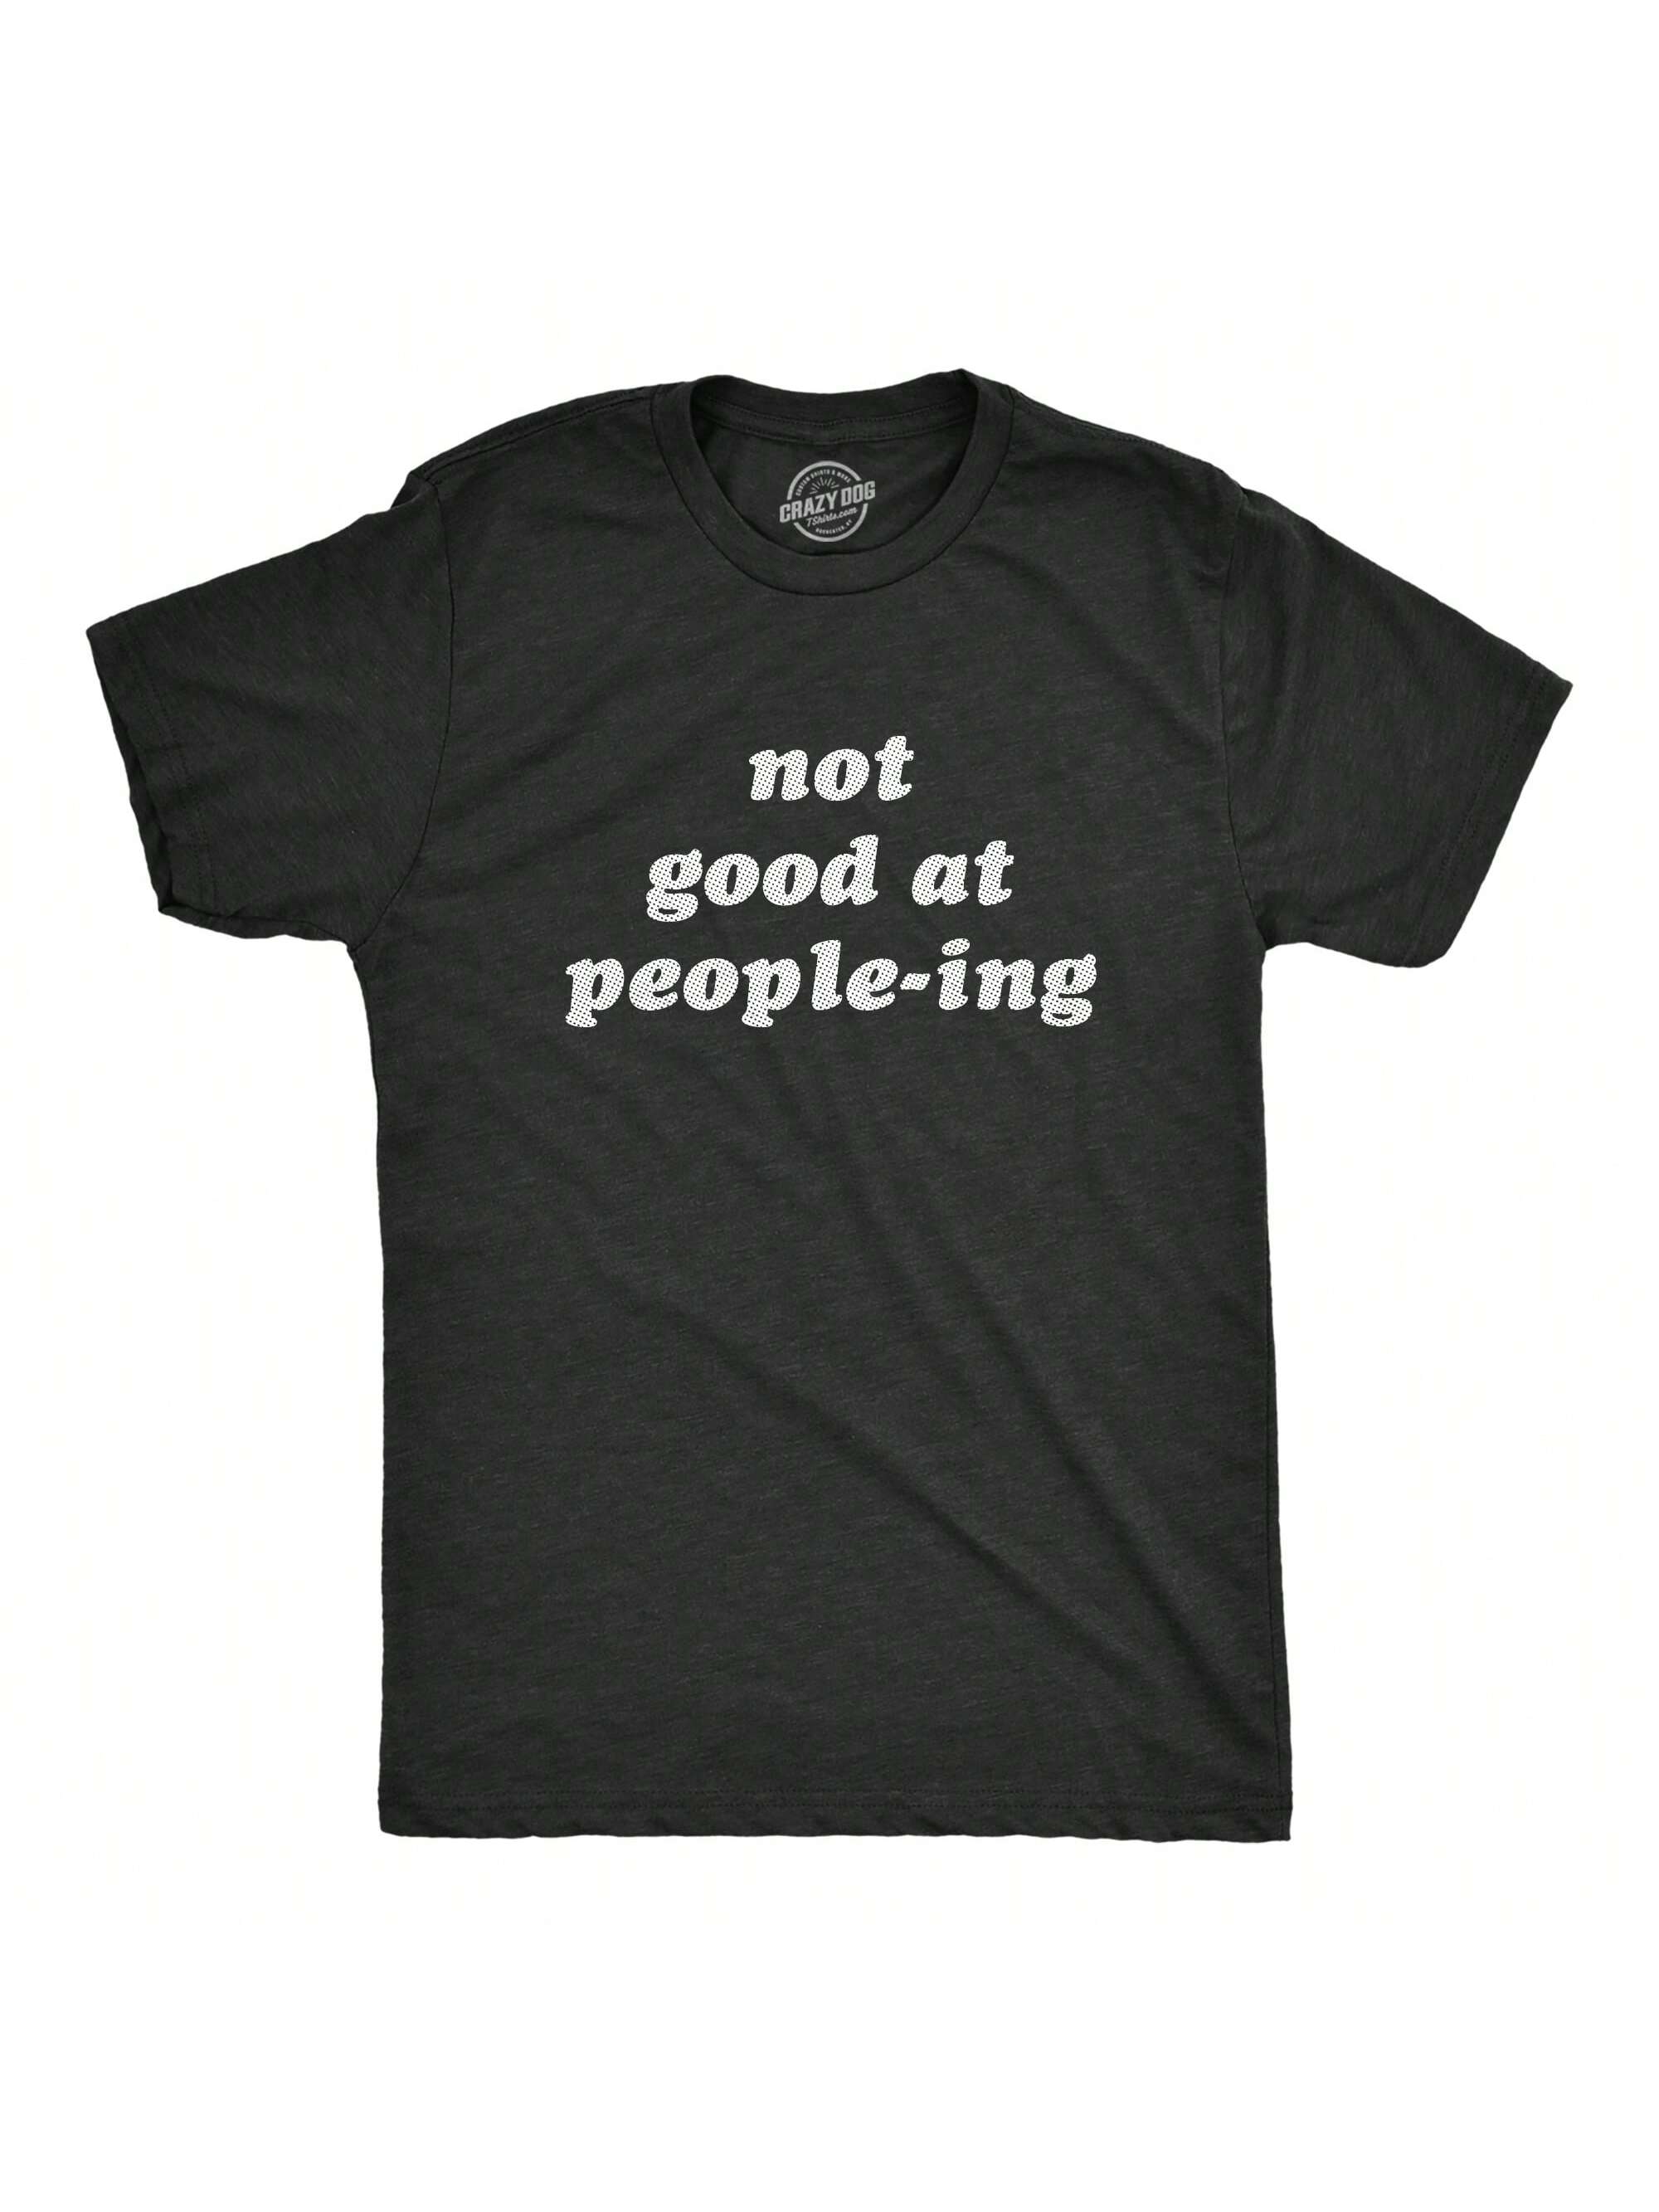 цена Мужская футболка «Не хорошо умеет населять людей» Забавная футболка «Интроверт-интроверт» для парней (Хезер Блэк — PEOPLEING) — S, хизер блэк - люди